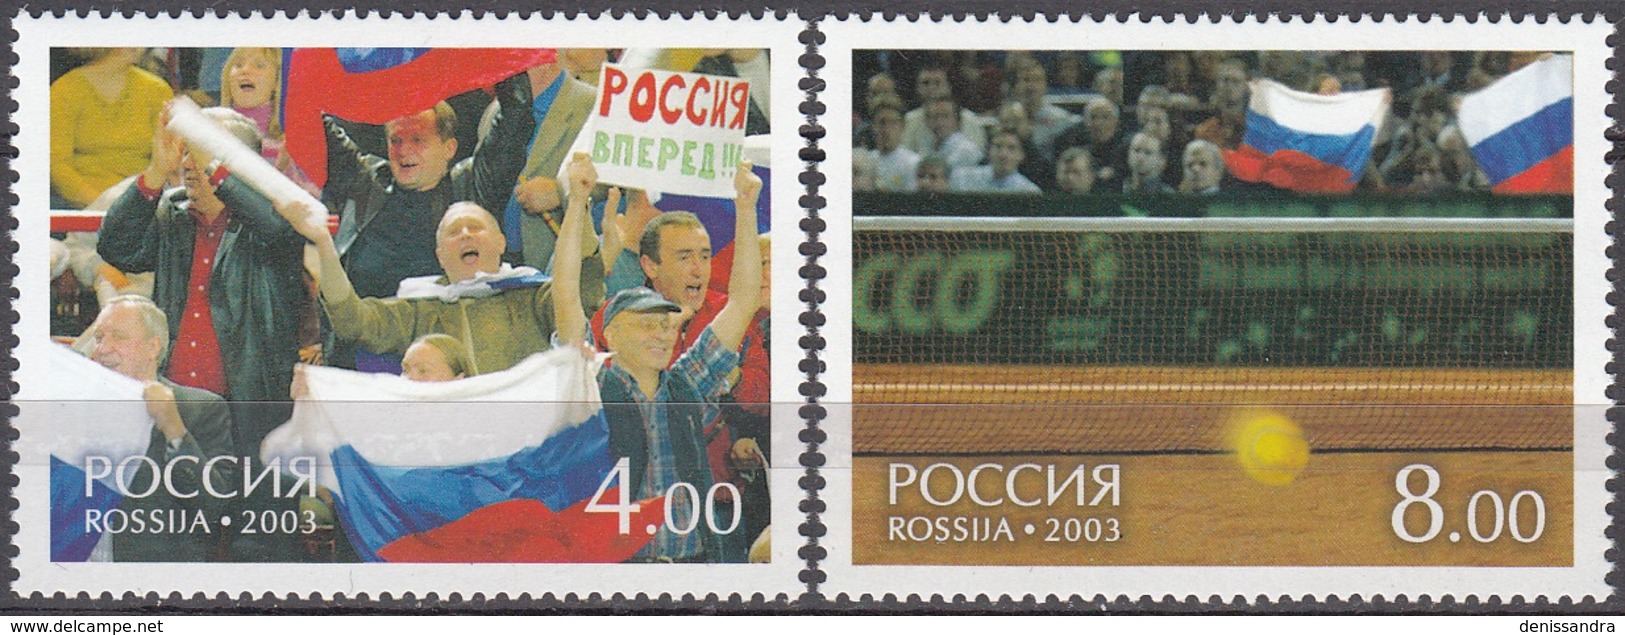 Rossija 2003 Michel 1061 - 1062 Neuf ** Cote (2008) 2.00 Euro Coupe Davis Tennis - Ongebruikt